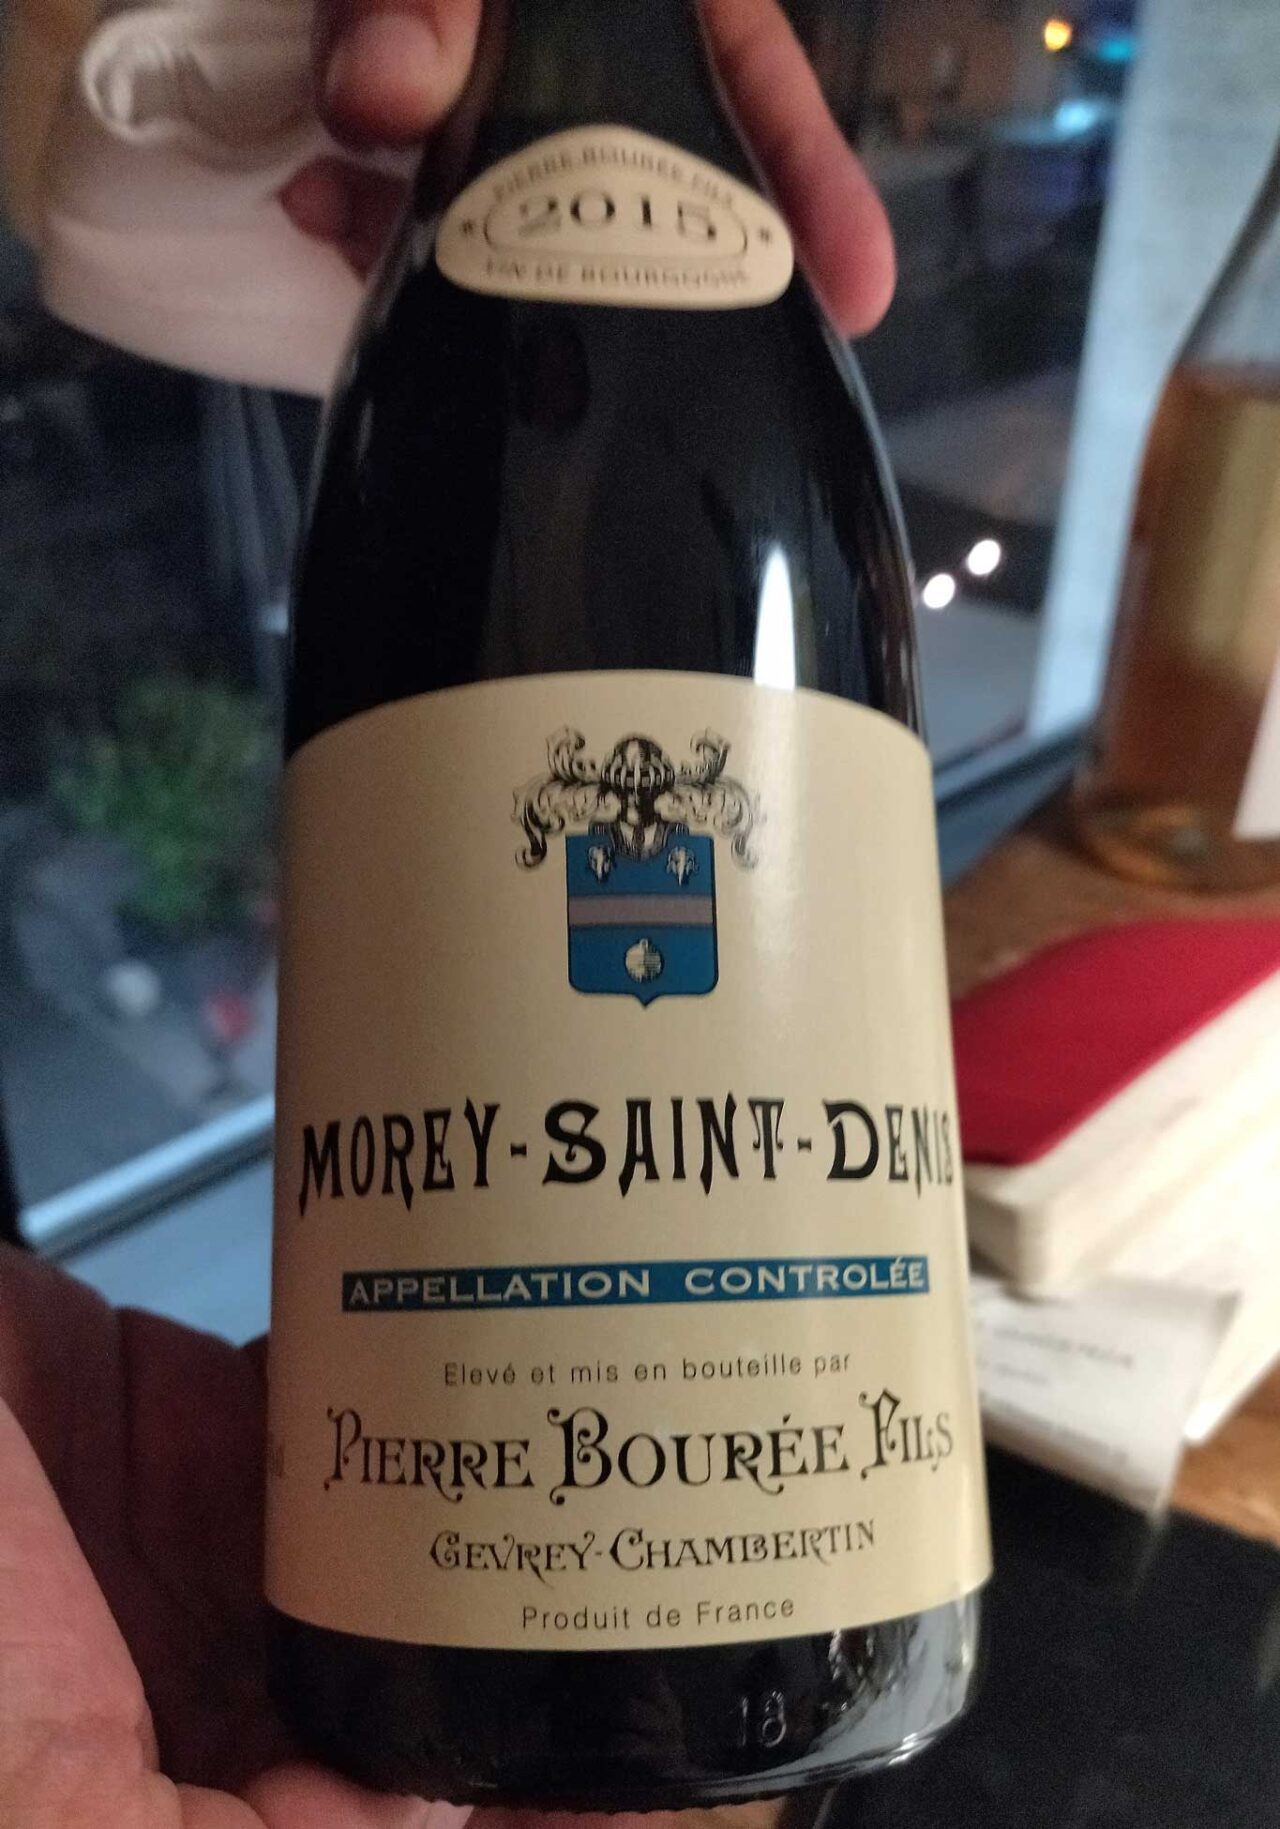 Moray Saint Denis Pierre Bourrée Fils